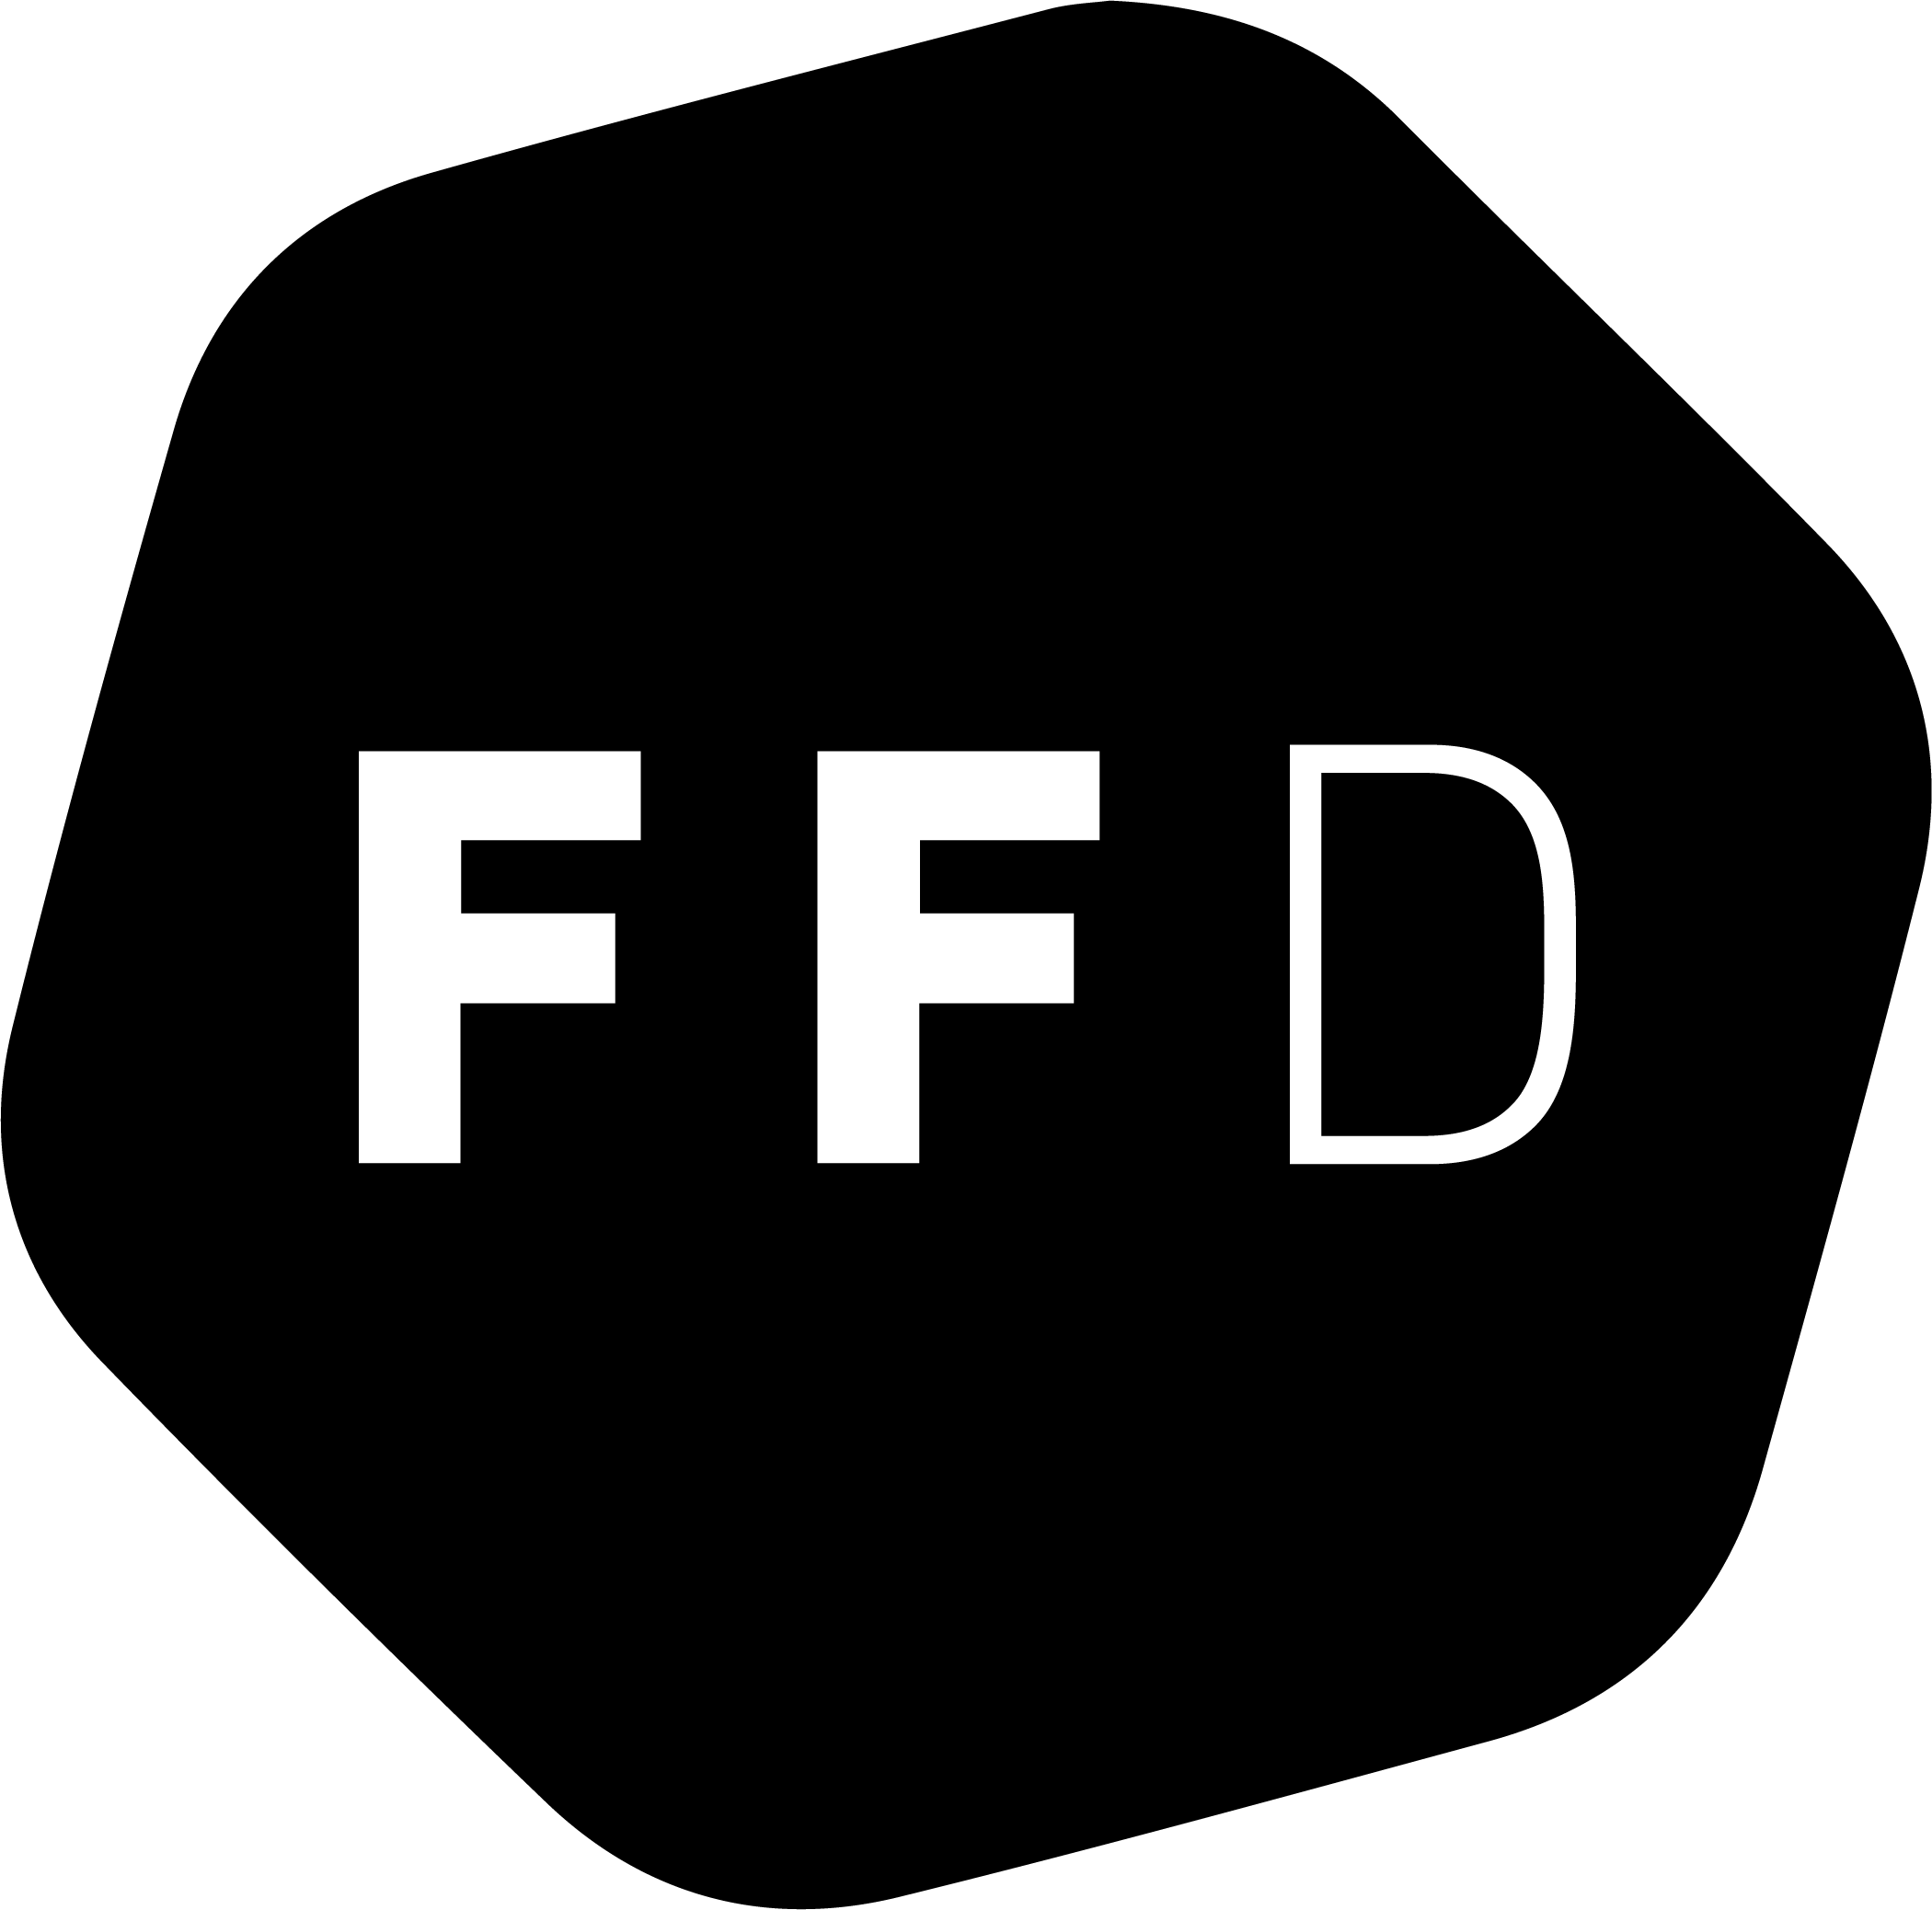 Formflut Logo
